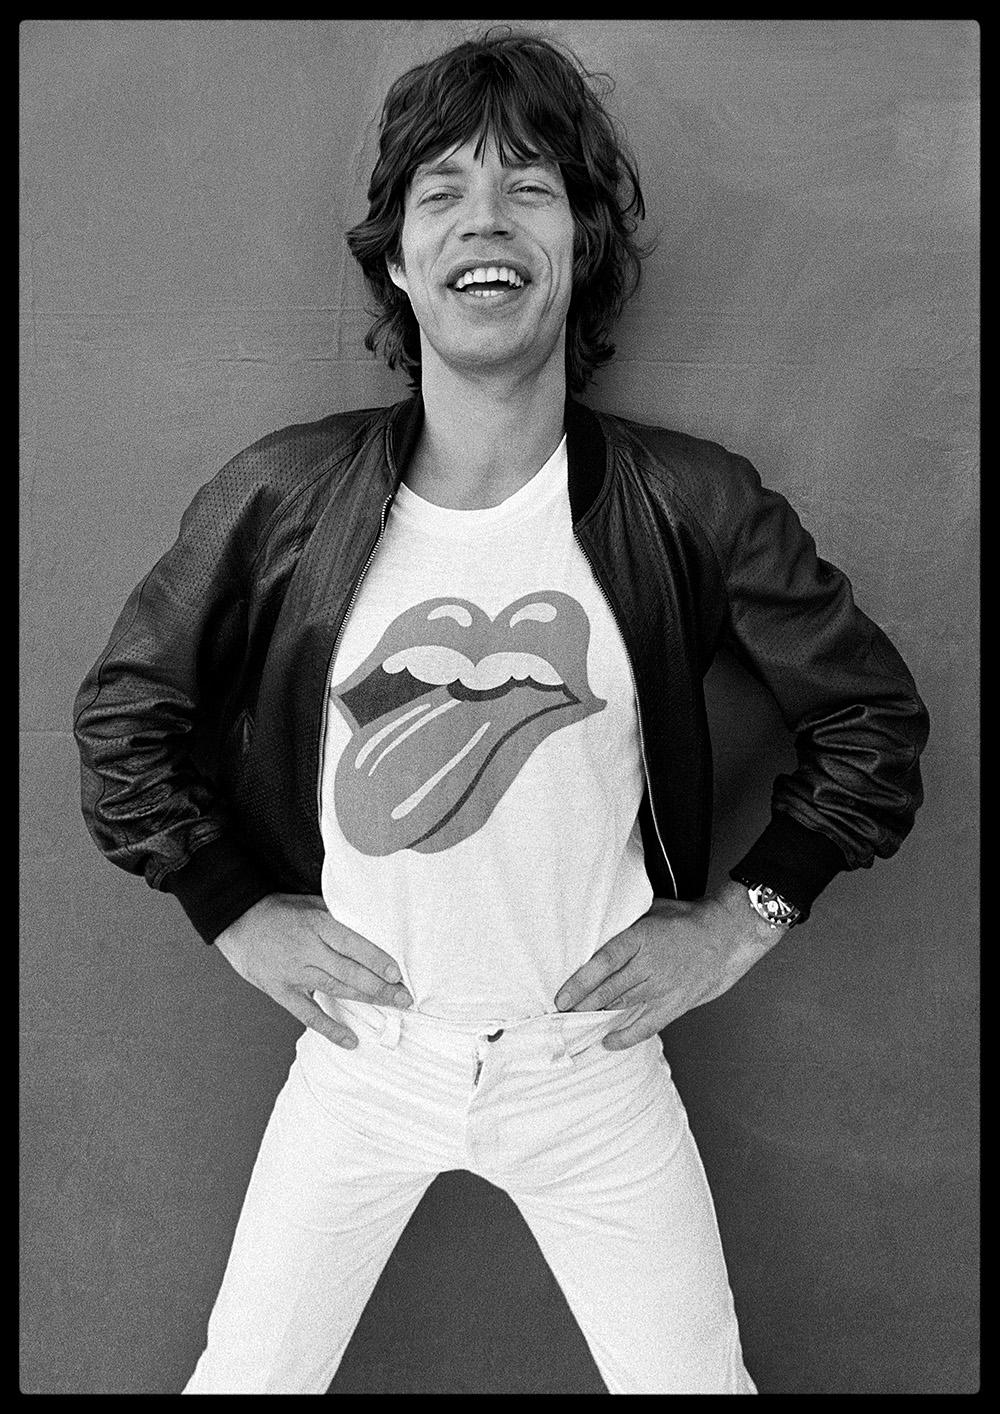 Mick Jagger Forty Licks

Par Arthur Steele 

Taille du papier : 54 x 44.5" / 137 x 104 cm

Tirage à la gélatine argentique
1970 (imprimé ultérieurement)
non encadré
signé à la main
édition limitée à 10 exemplaires de cette taille 

note : d'autres